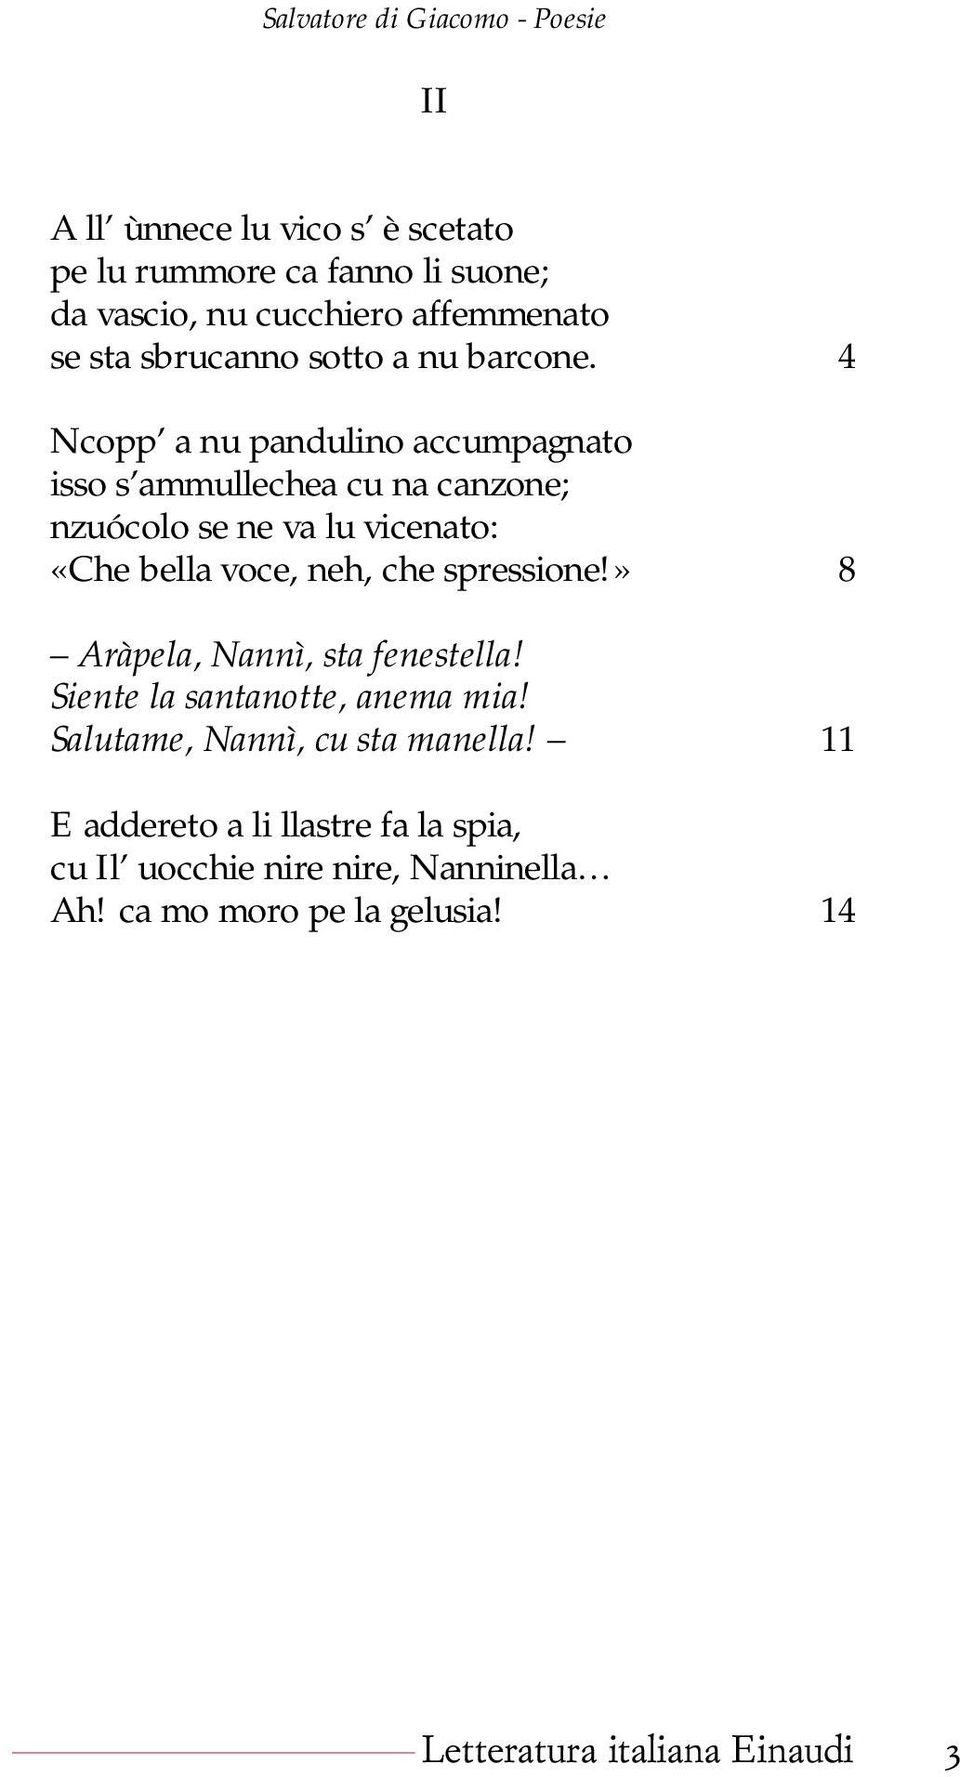 Poesie Facili Di Natale.Poesie Di Salvatore Di Giacomo Letteratura Italiana Einaudi Pdf Free Download